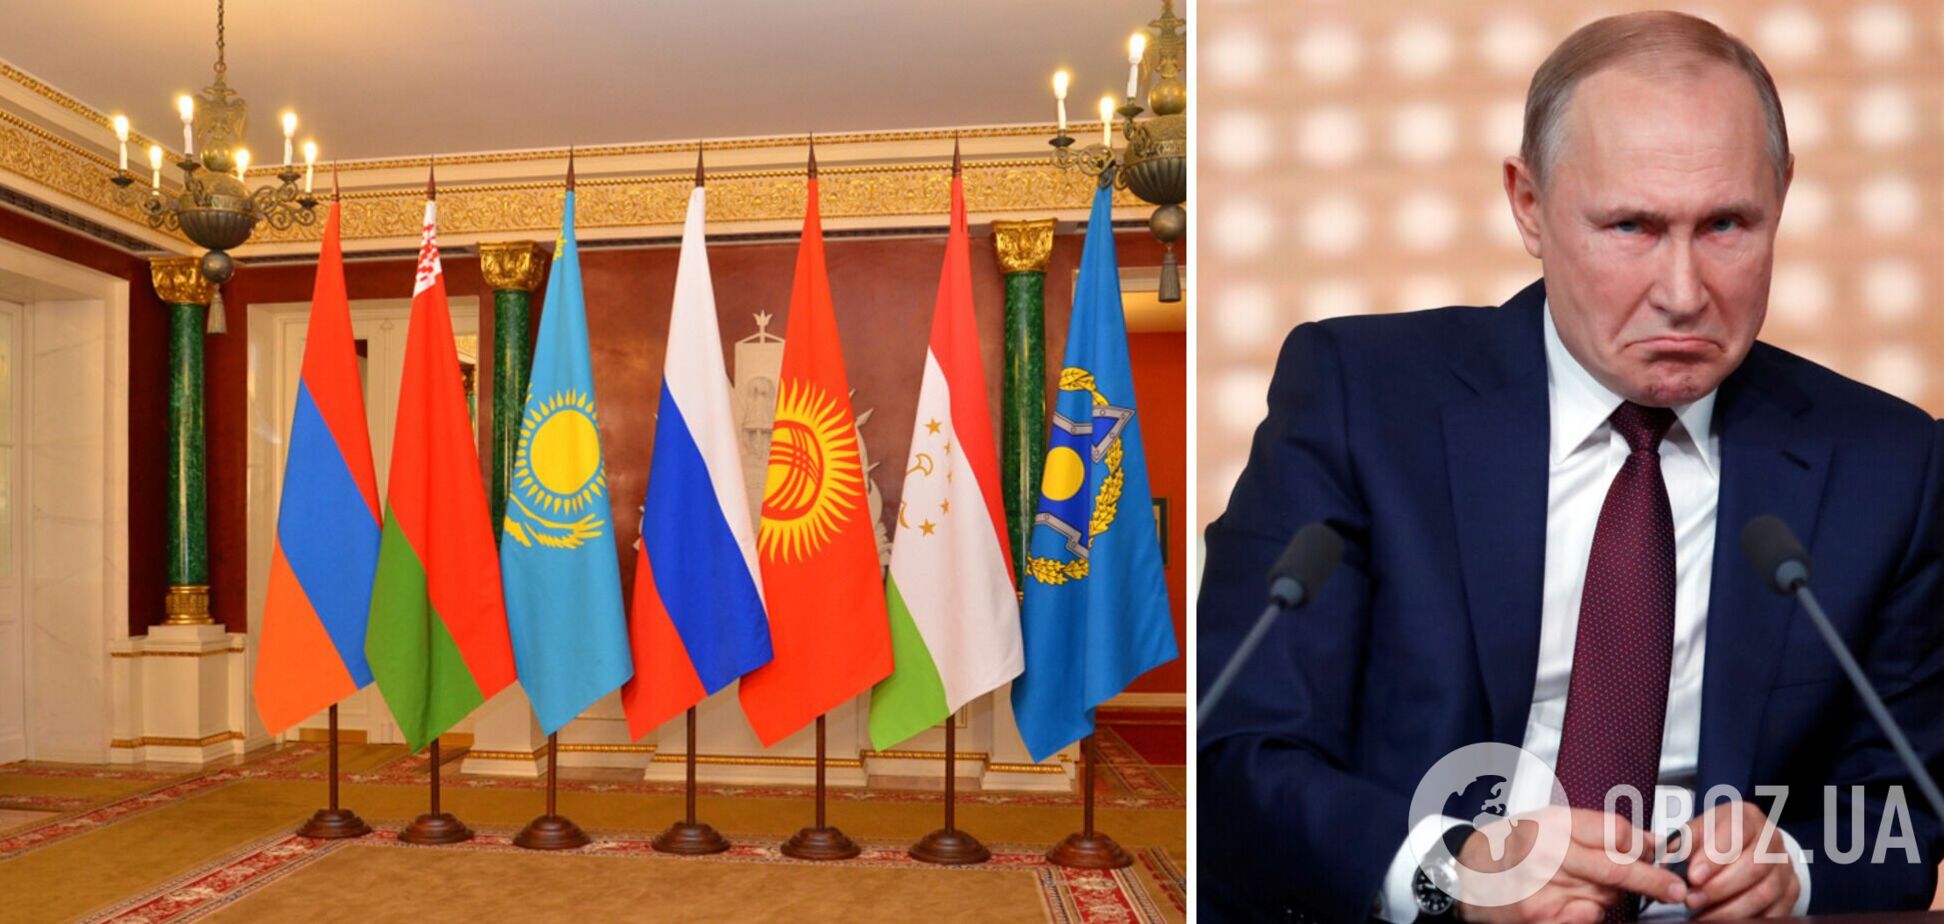  Кыргызстан,  Узбекистан и Казахстан выступили против участиях своих граждан в путинской войне в Украине